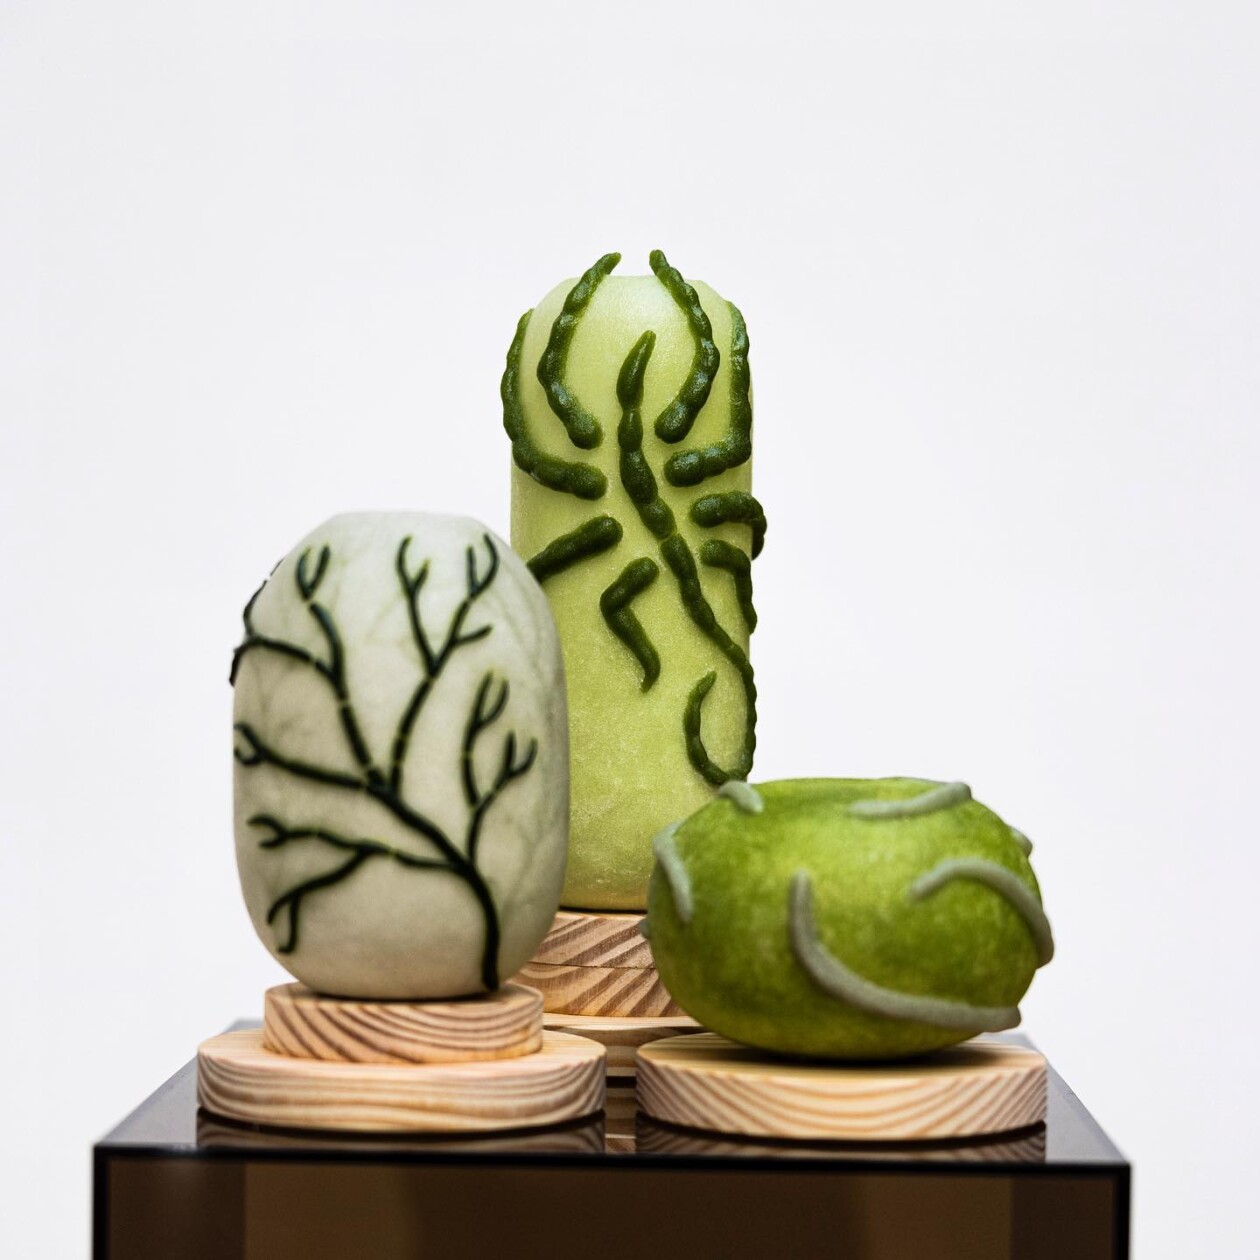 Organic Inspired Glass Sculptures By Julie Light (16)